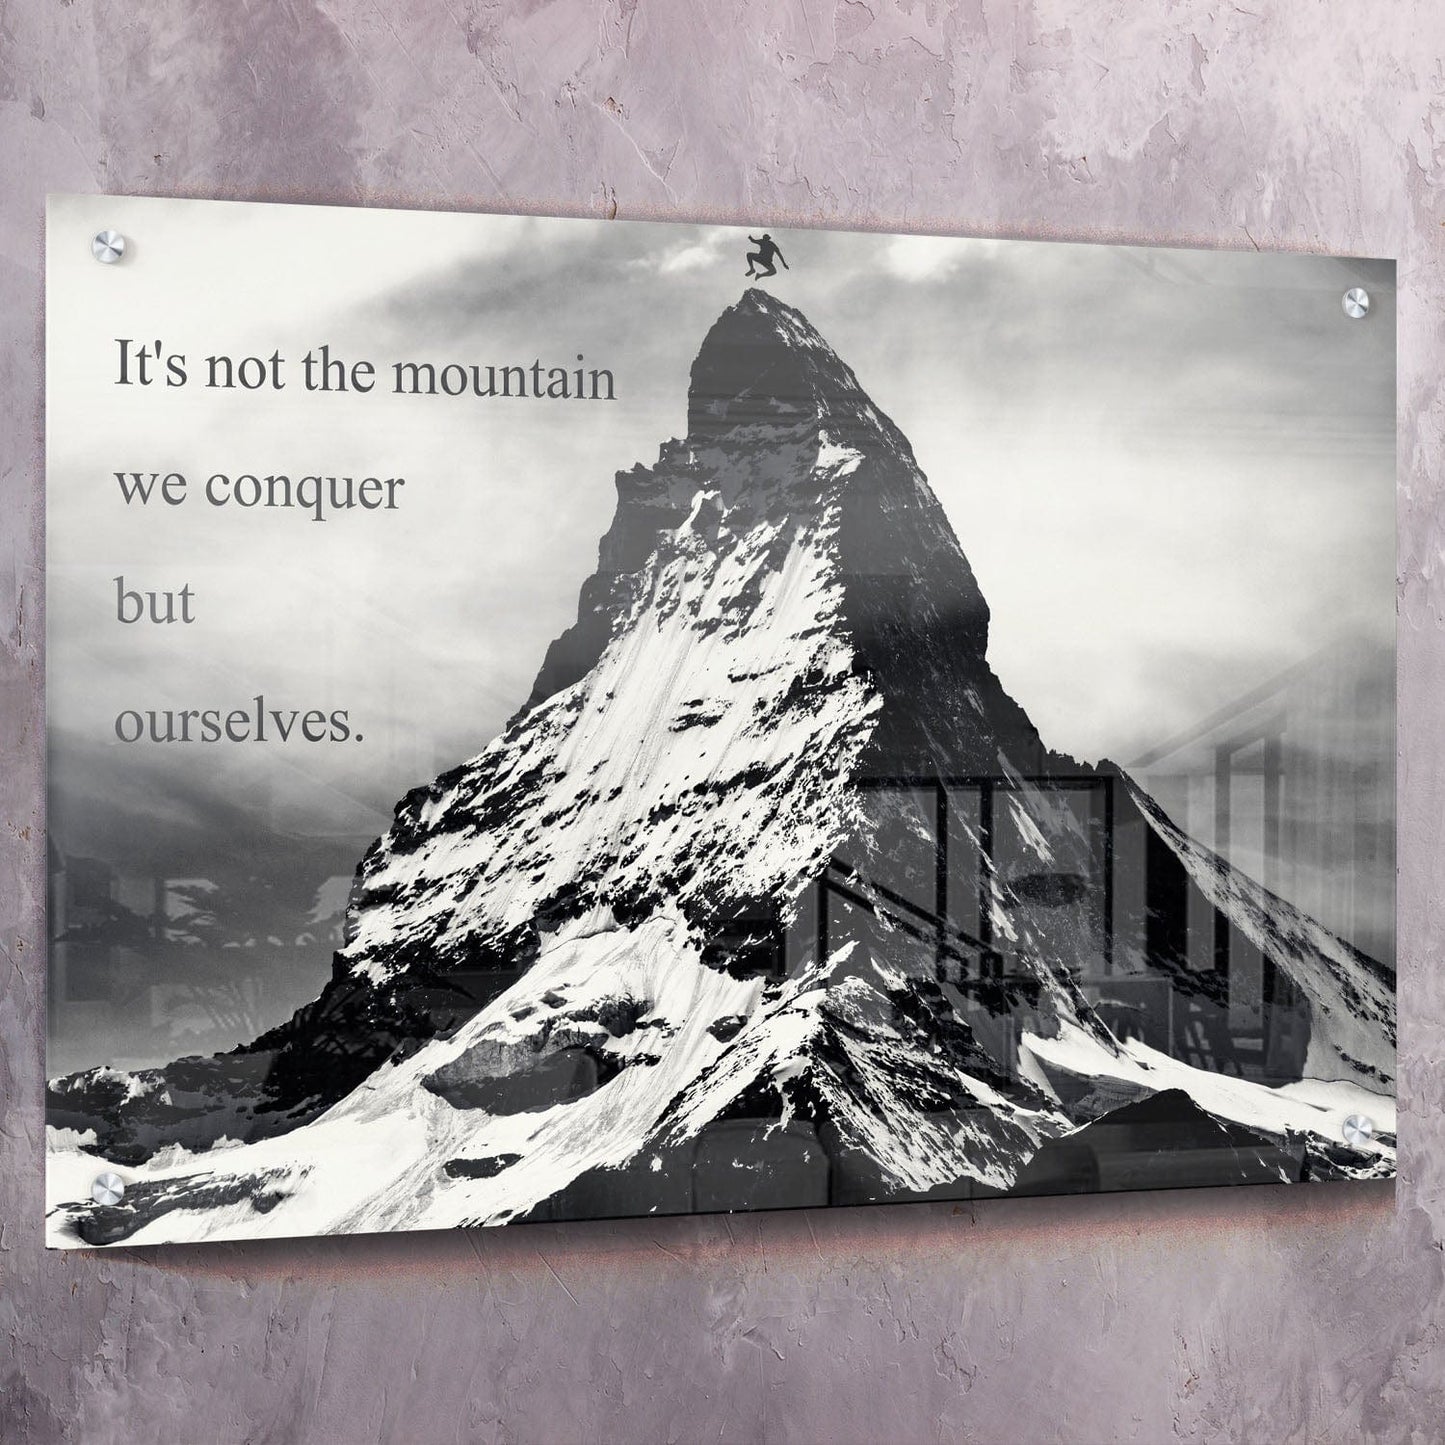 Mountain Conquer Wall Art | Inspirational Wall Art Motivational Wall Art Quotes Office Art | ImpaktMaker Exclusive Canvas Art Landscape